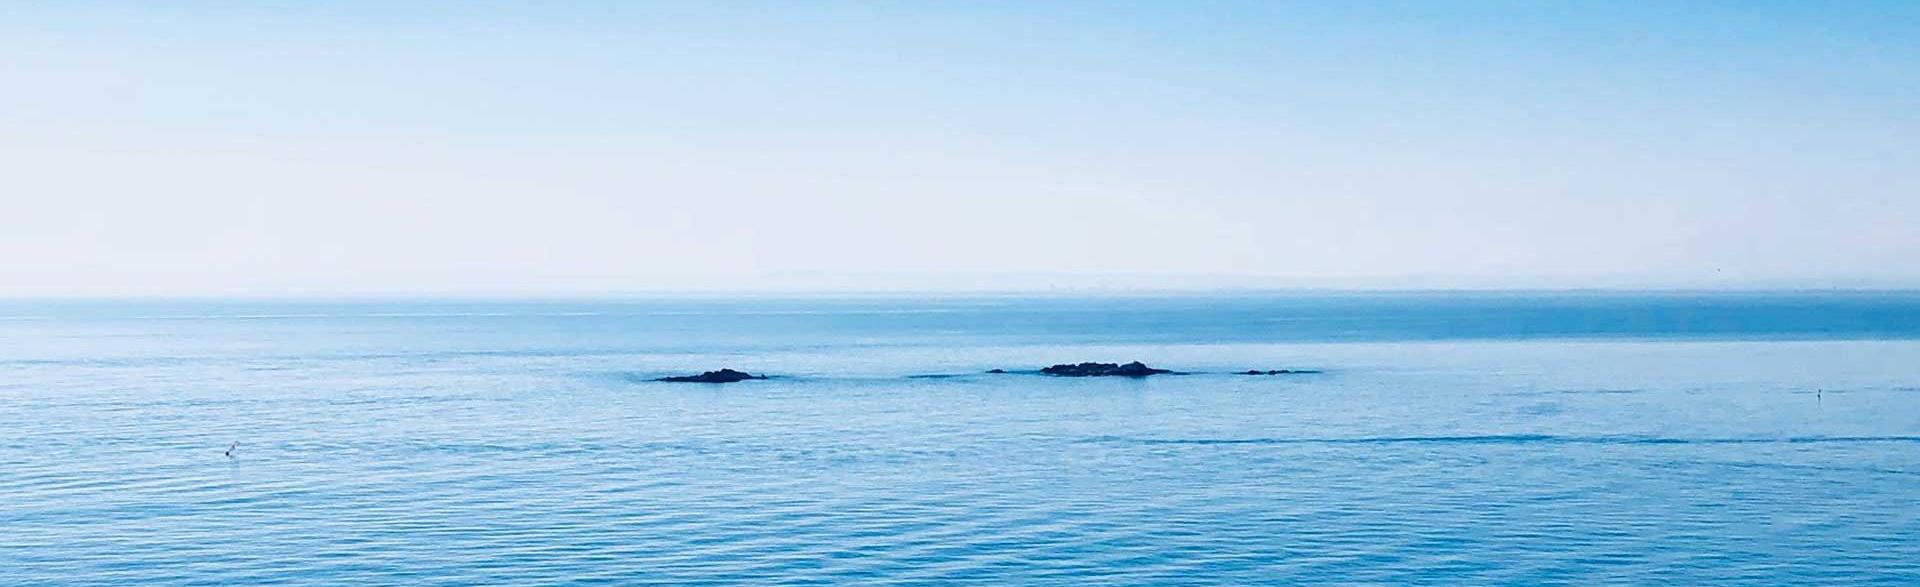 Vistas de mar pacíficas con islas de els brancs